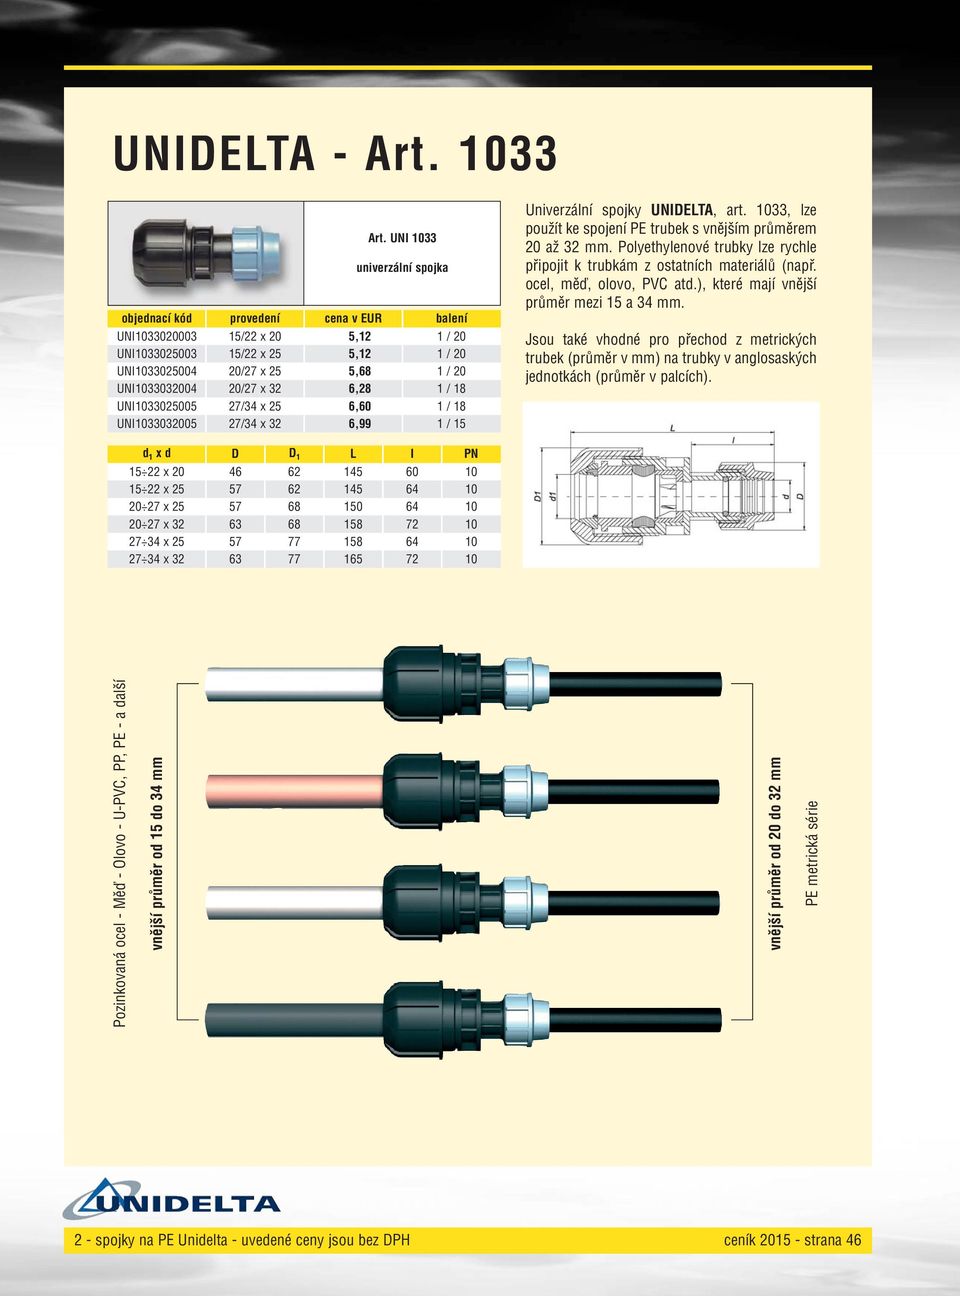 UNI033032005 27/34 x 32 6,99 / 5 Univerzální spojky UNIDELTA, art. 033, lze použít ke spojení PE trubek s vnějším průměrem 20 až 32 mm.